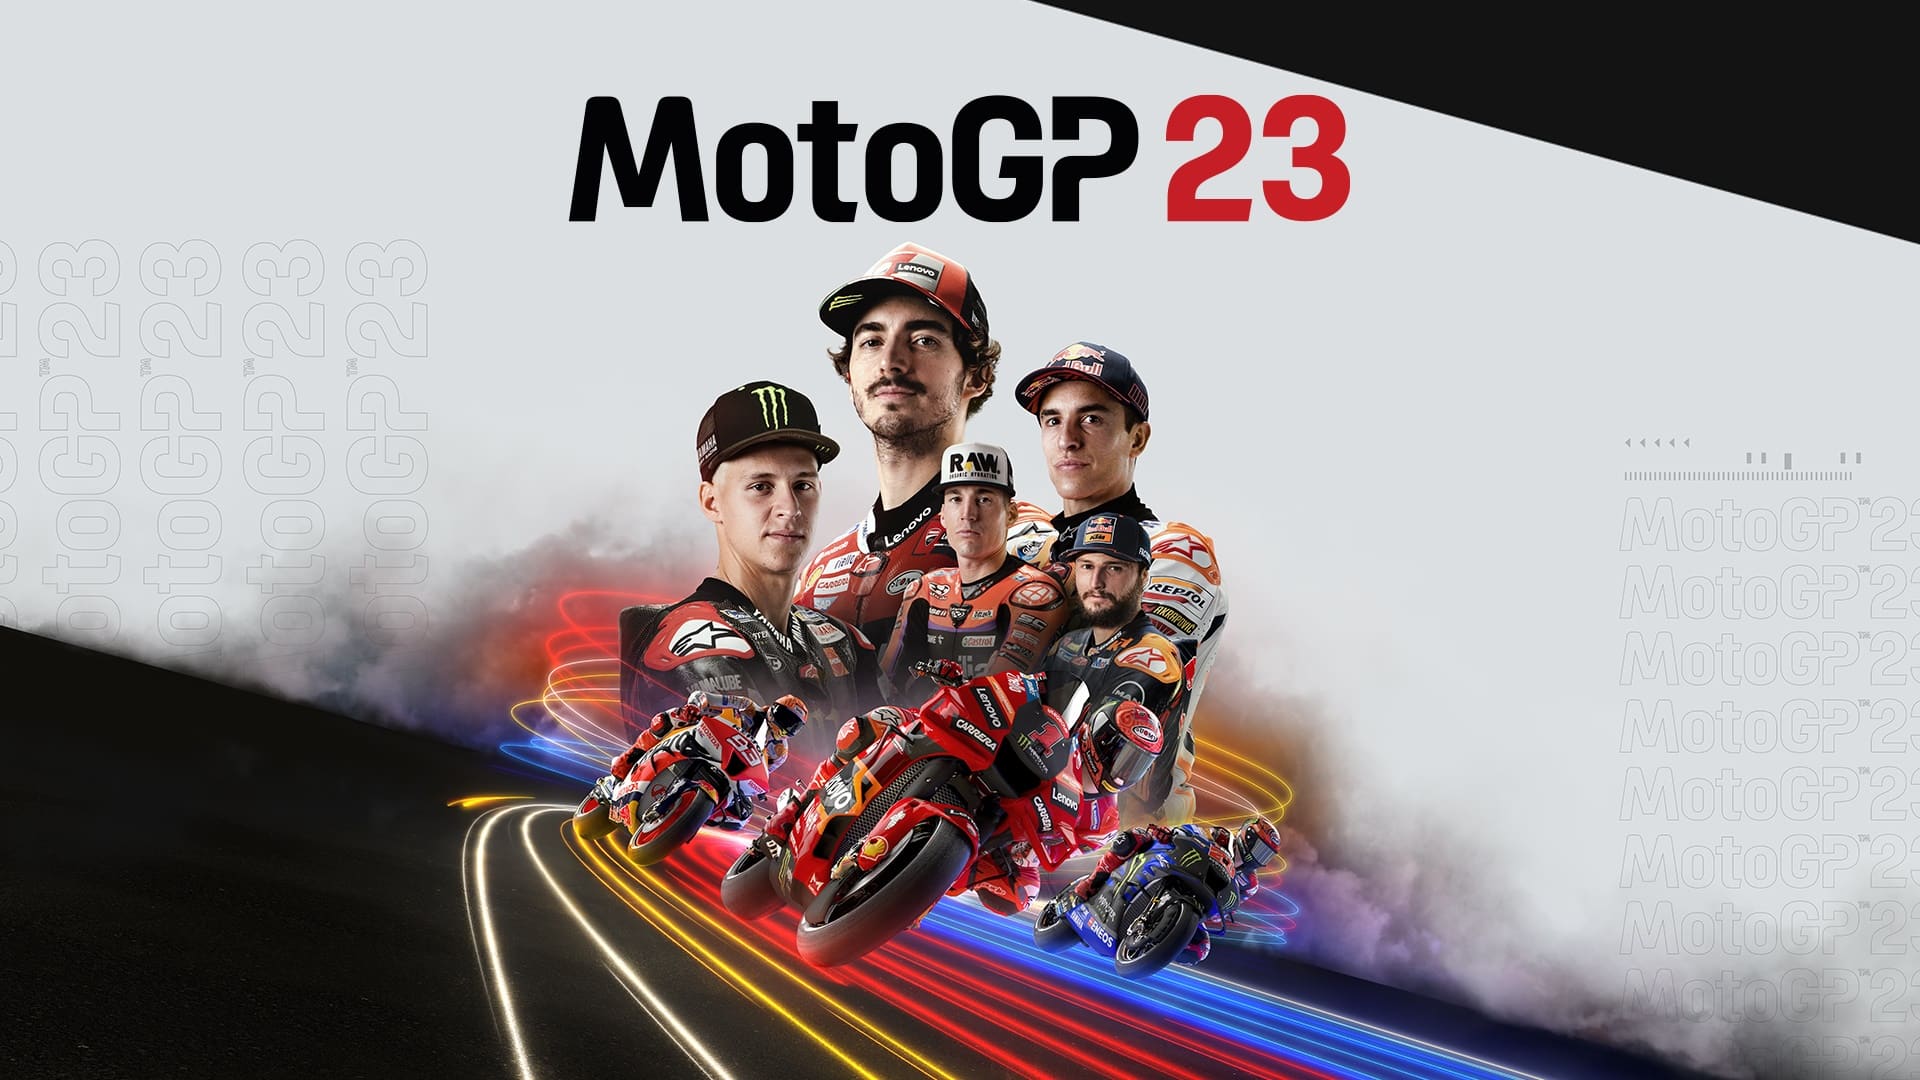 Vídeojuego MotoGP23